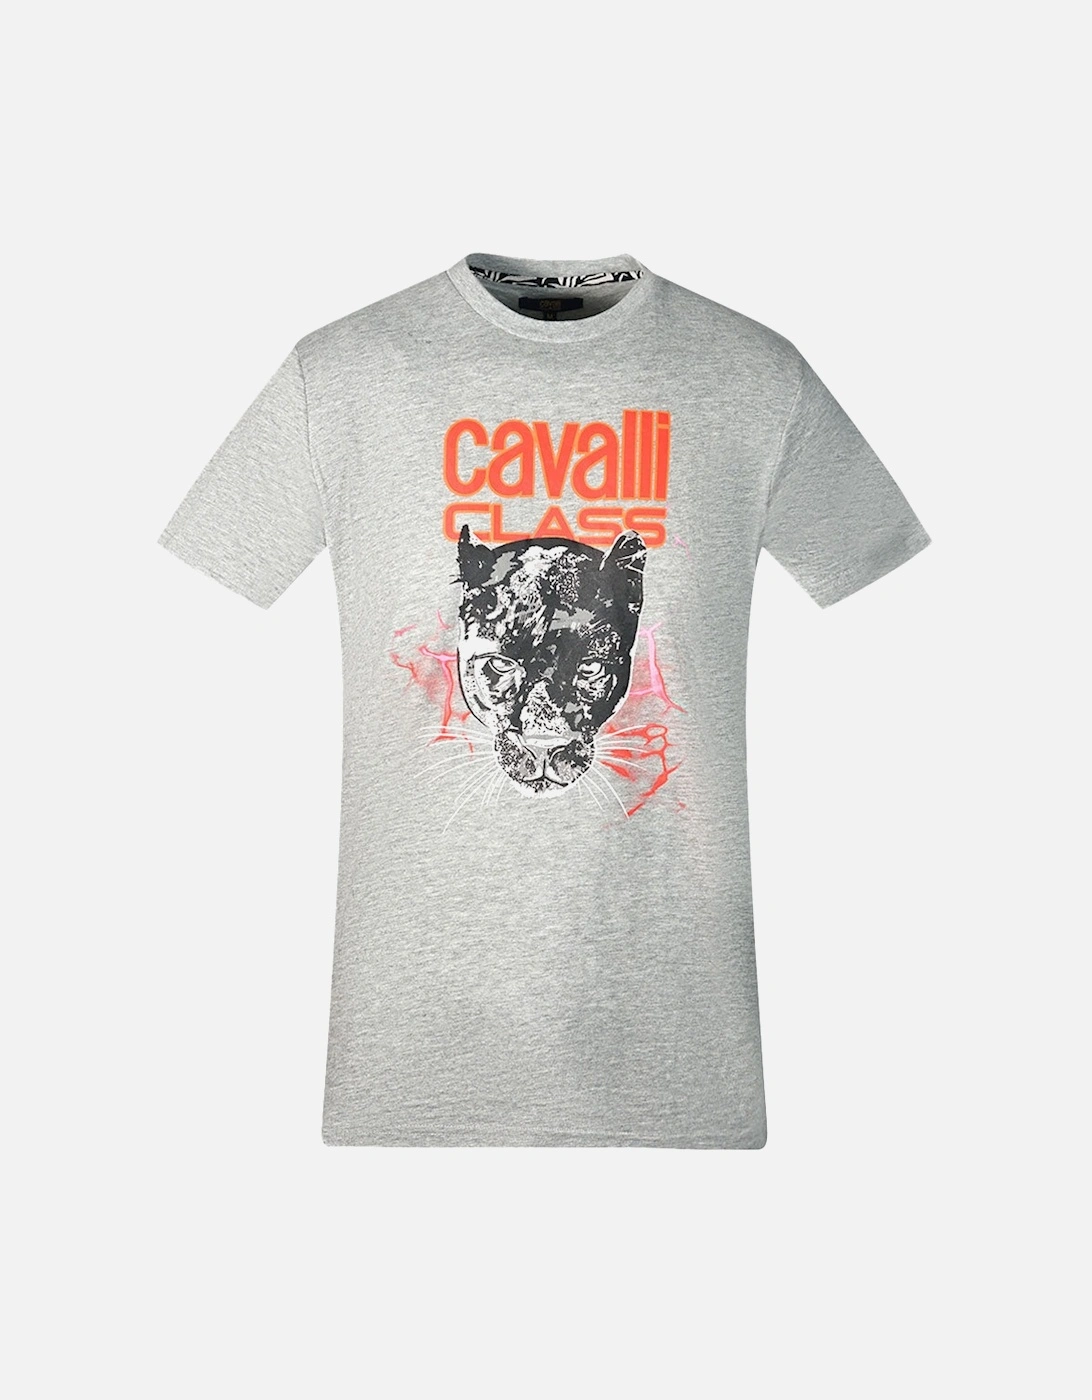 Cavalli Class Lightning Panther Design Grey T-Shirt, 3 of 2